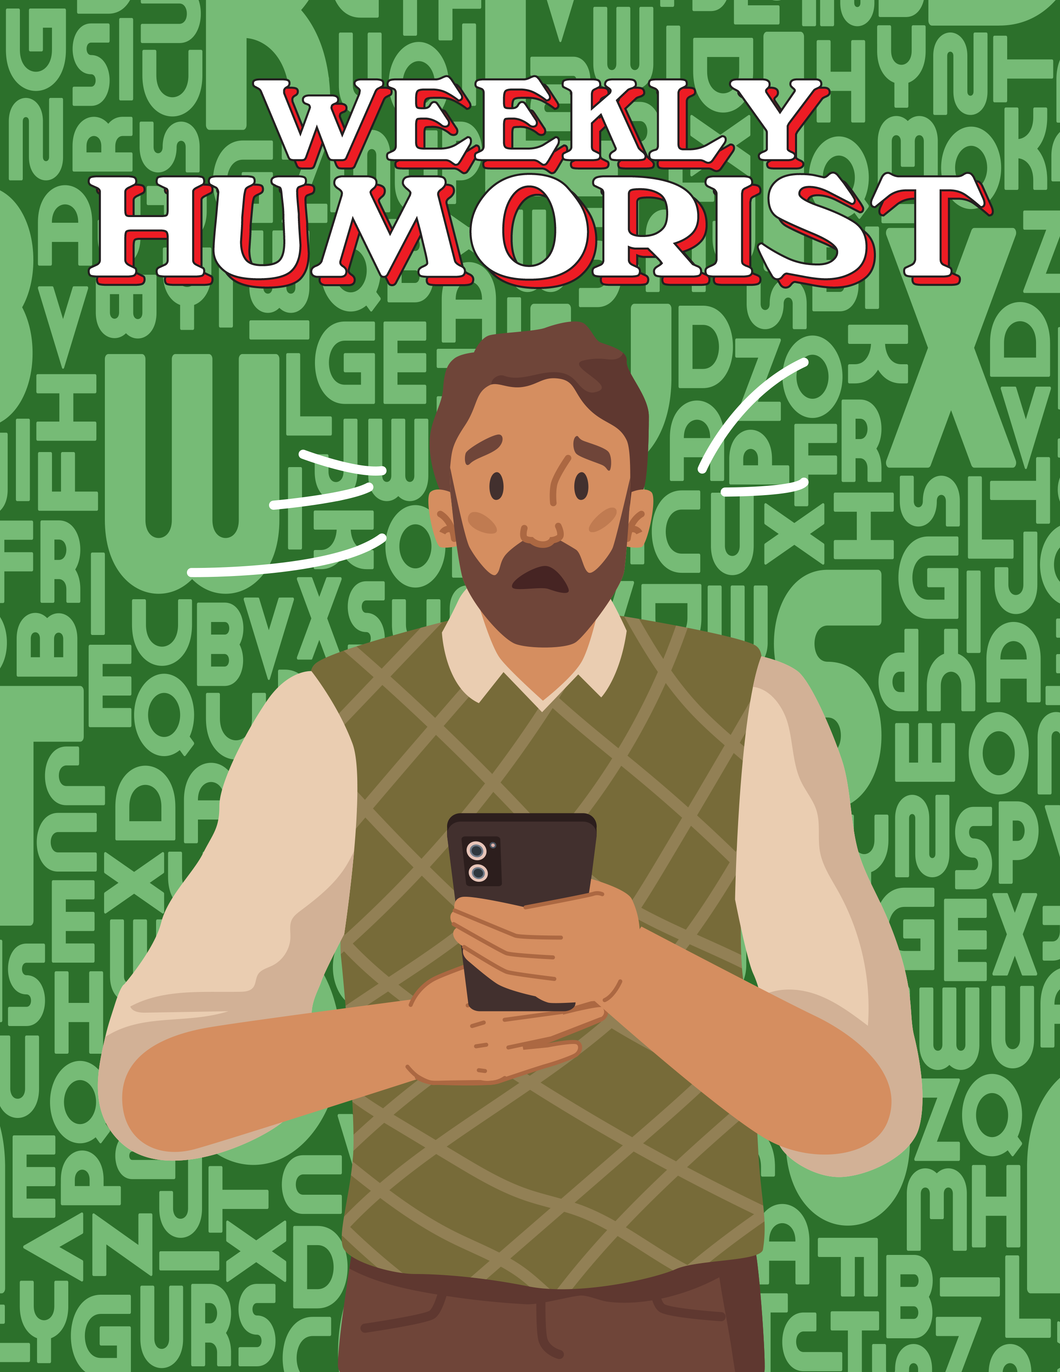 Weekly Humorist Magazine: Issue 285